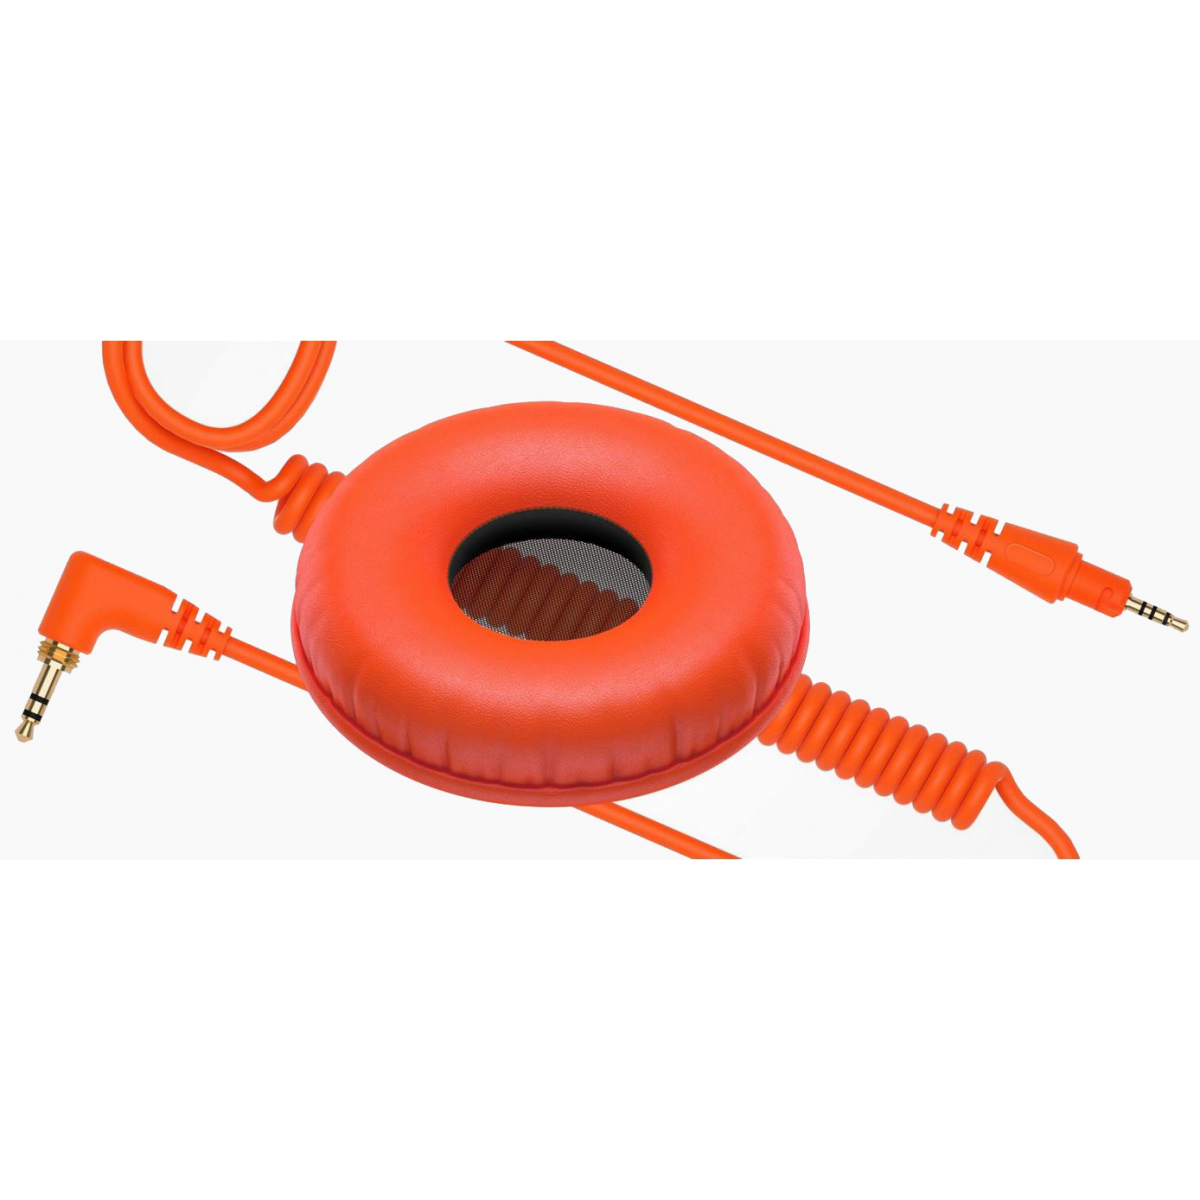 Accessoires casques - Pioneer DJ - HC-CP08-M orange